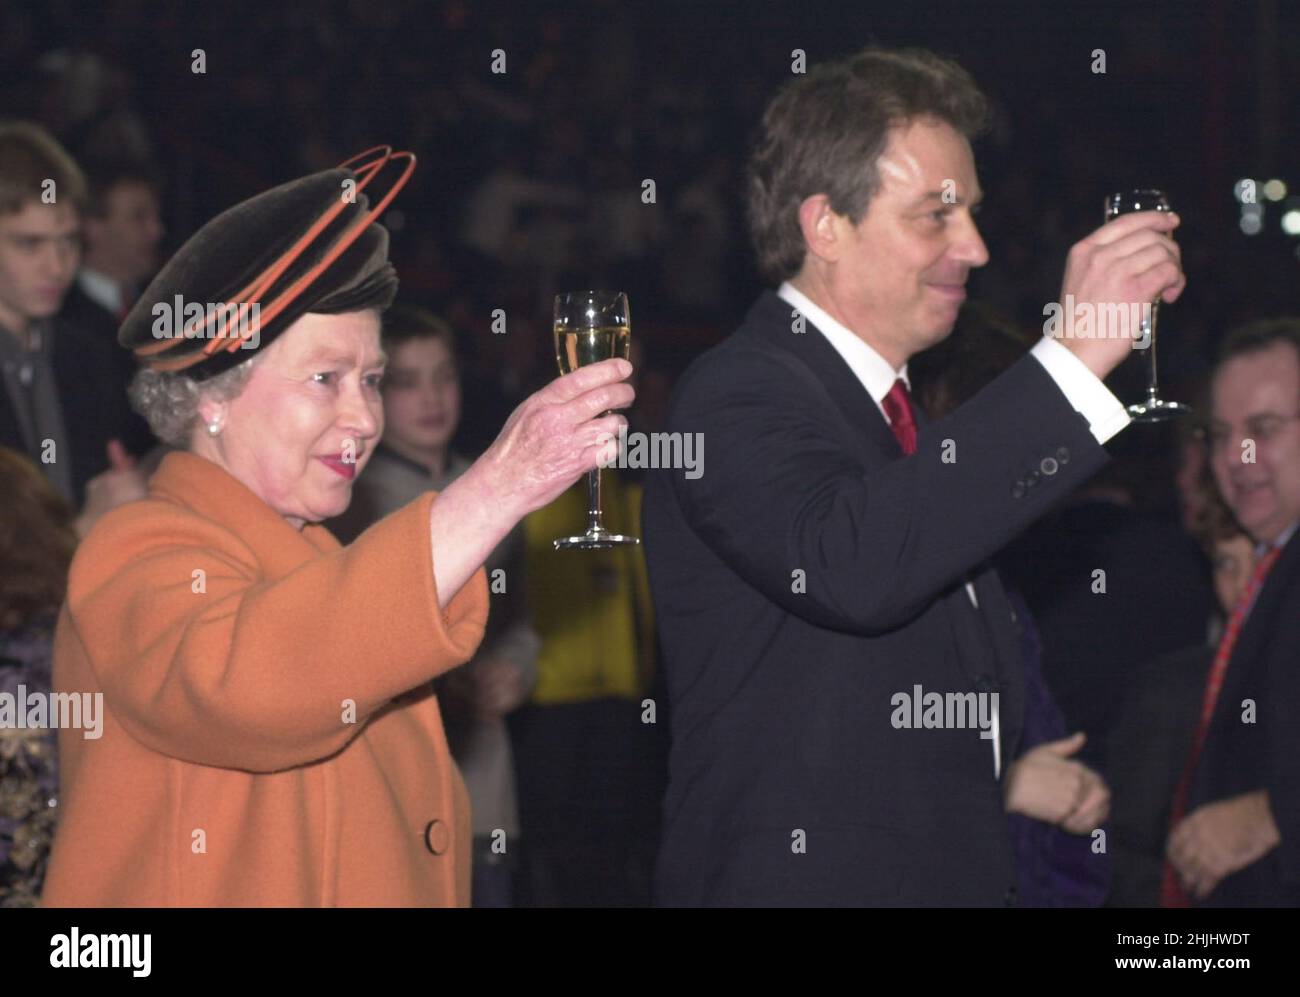 Foto del archivo fechada el 1/1/2001 de la Reina Isabel II y el Primer Ministro británico Tony Blair levantando sus gafas como huelgas de medianoche durante las celebraciones de apertura en el Millennium Dome en Greenwich en el SE de Londres. Fecha de emisión: Domingo 30 de enero de 2022. Foto de stock